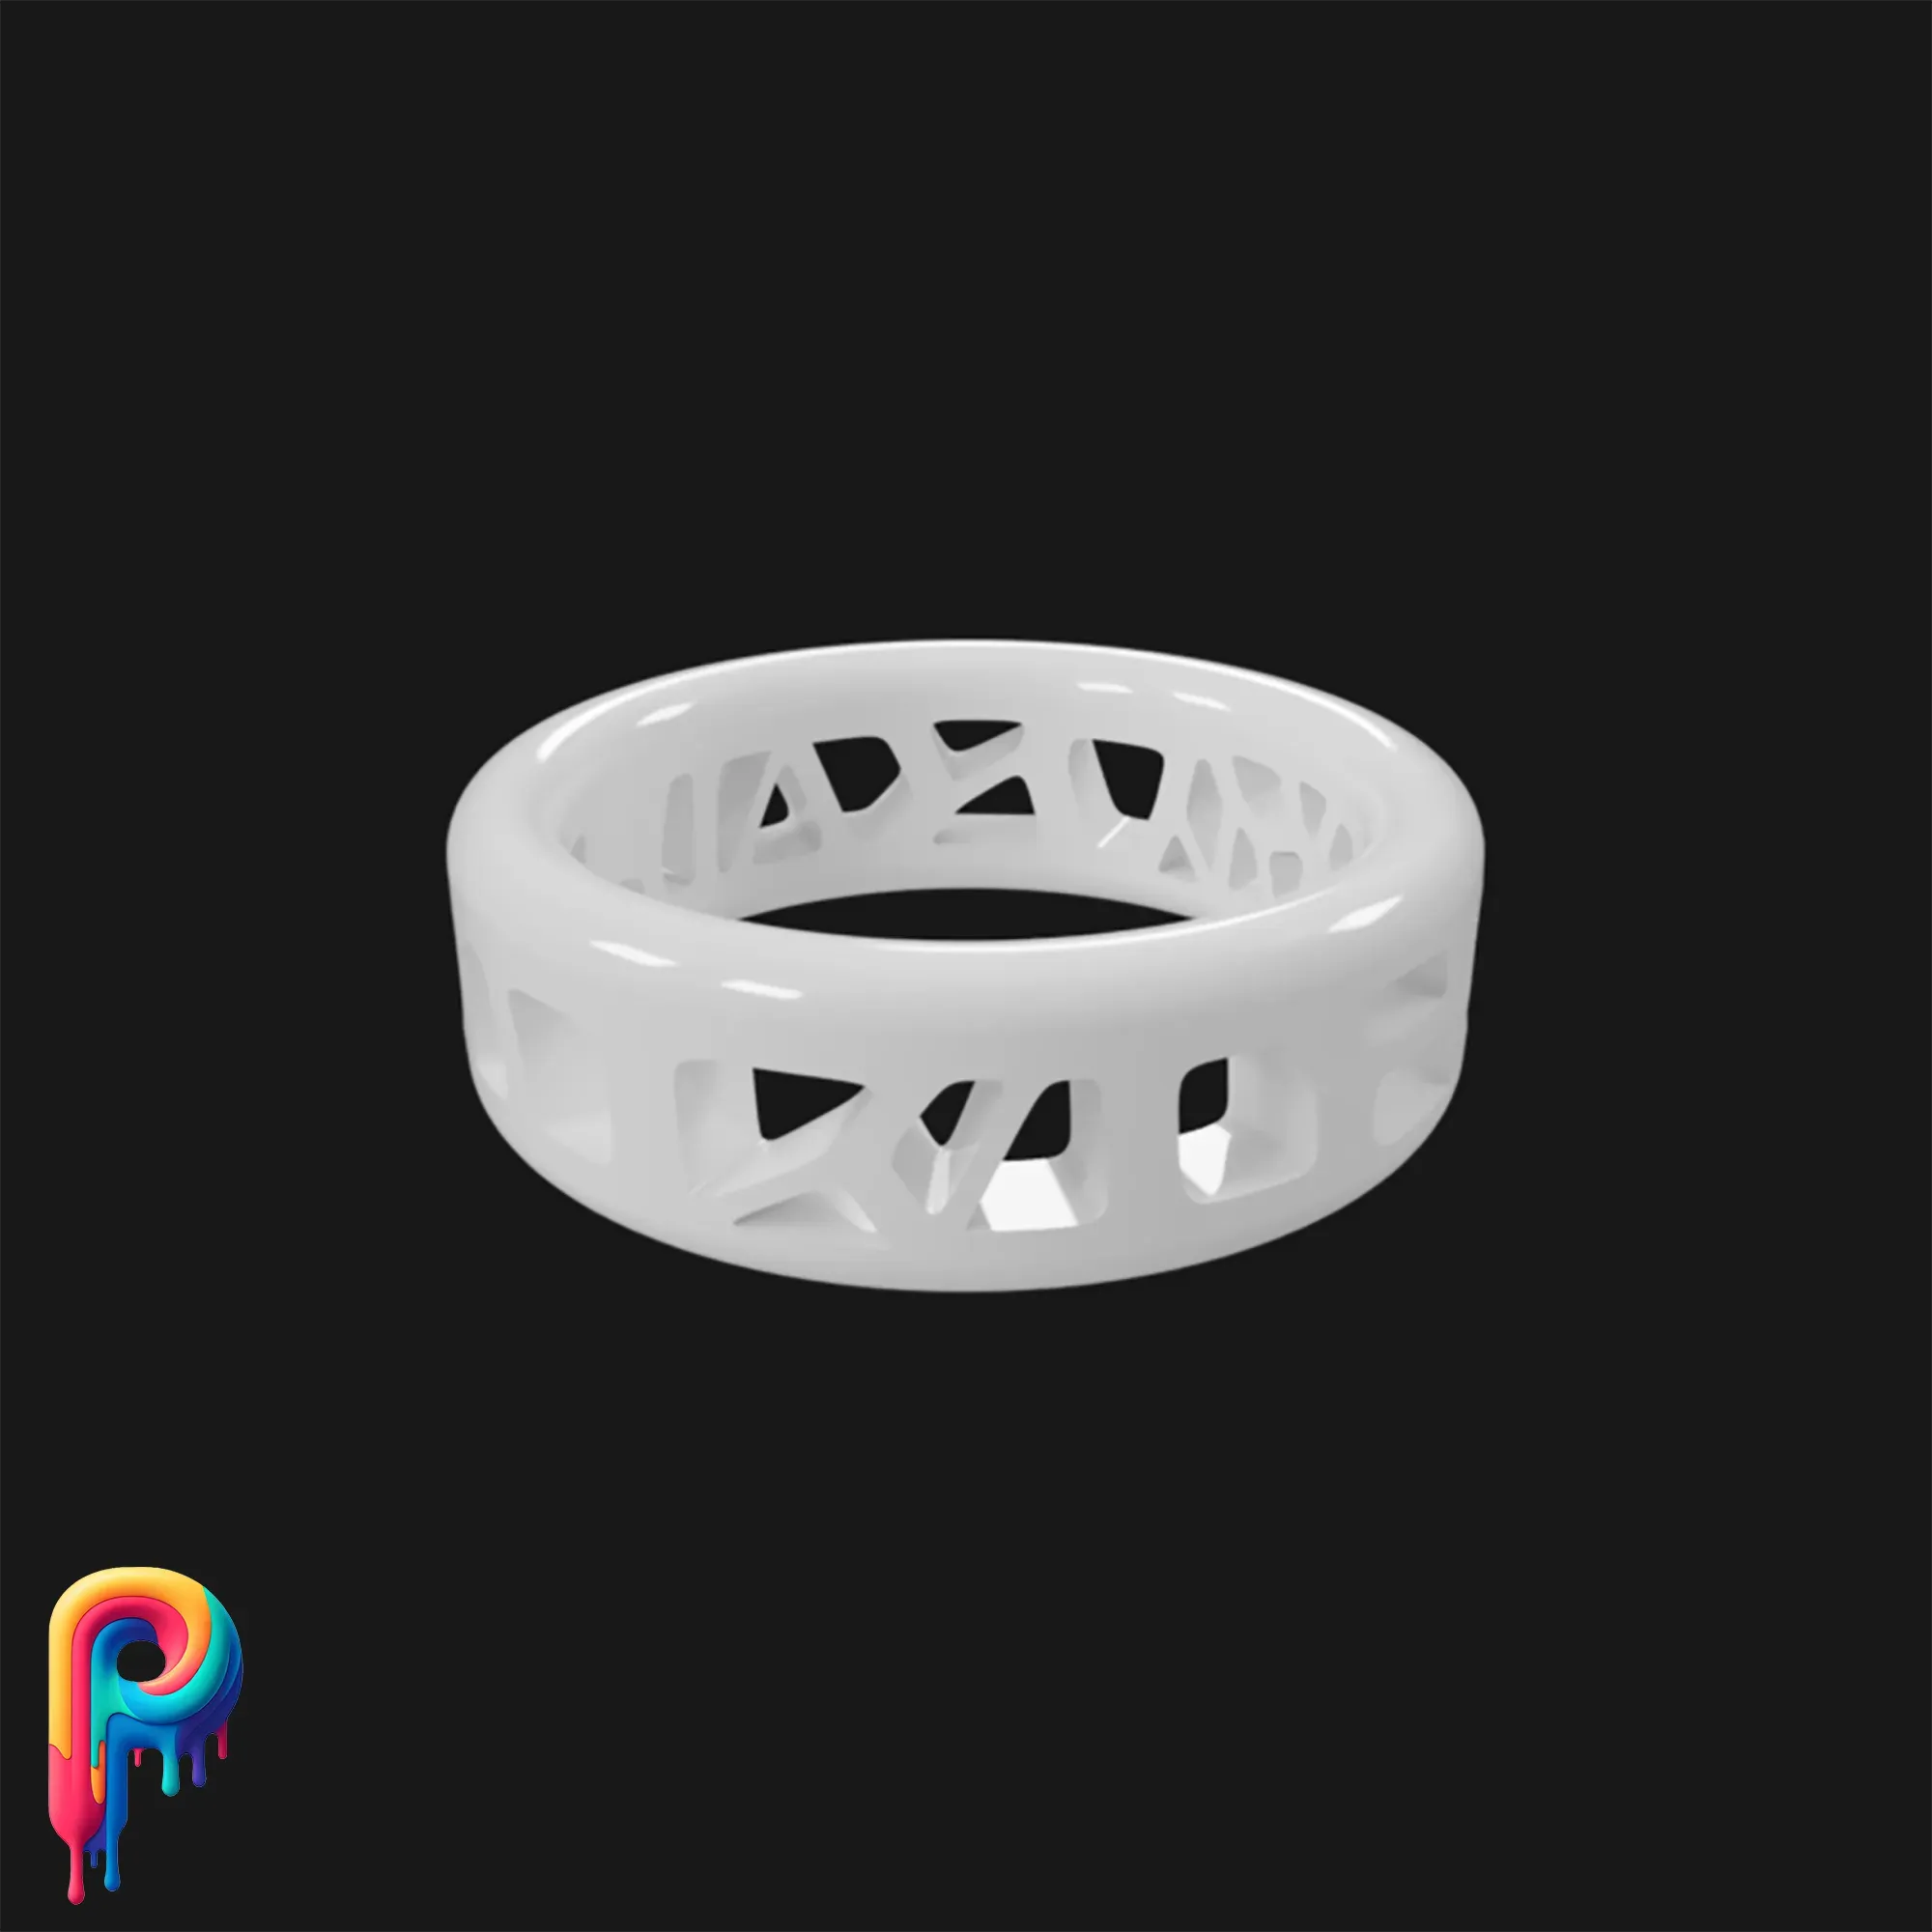 Voronoi Ring by Polymeria